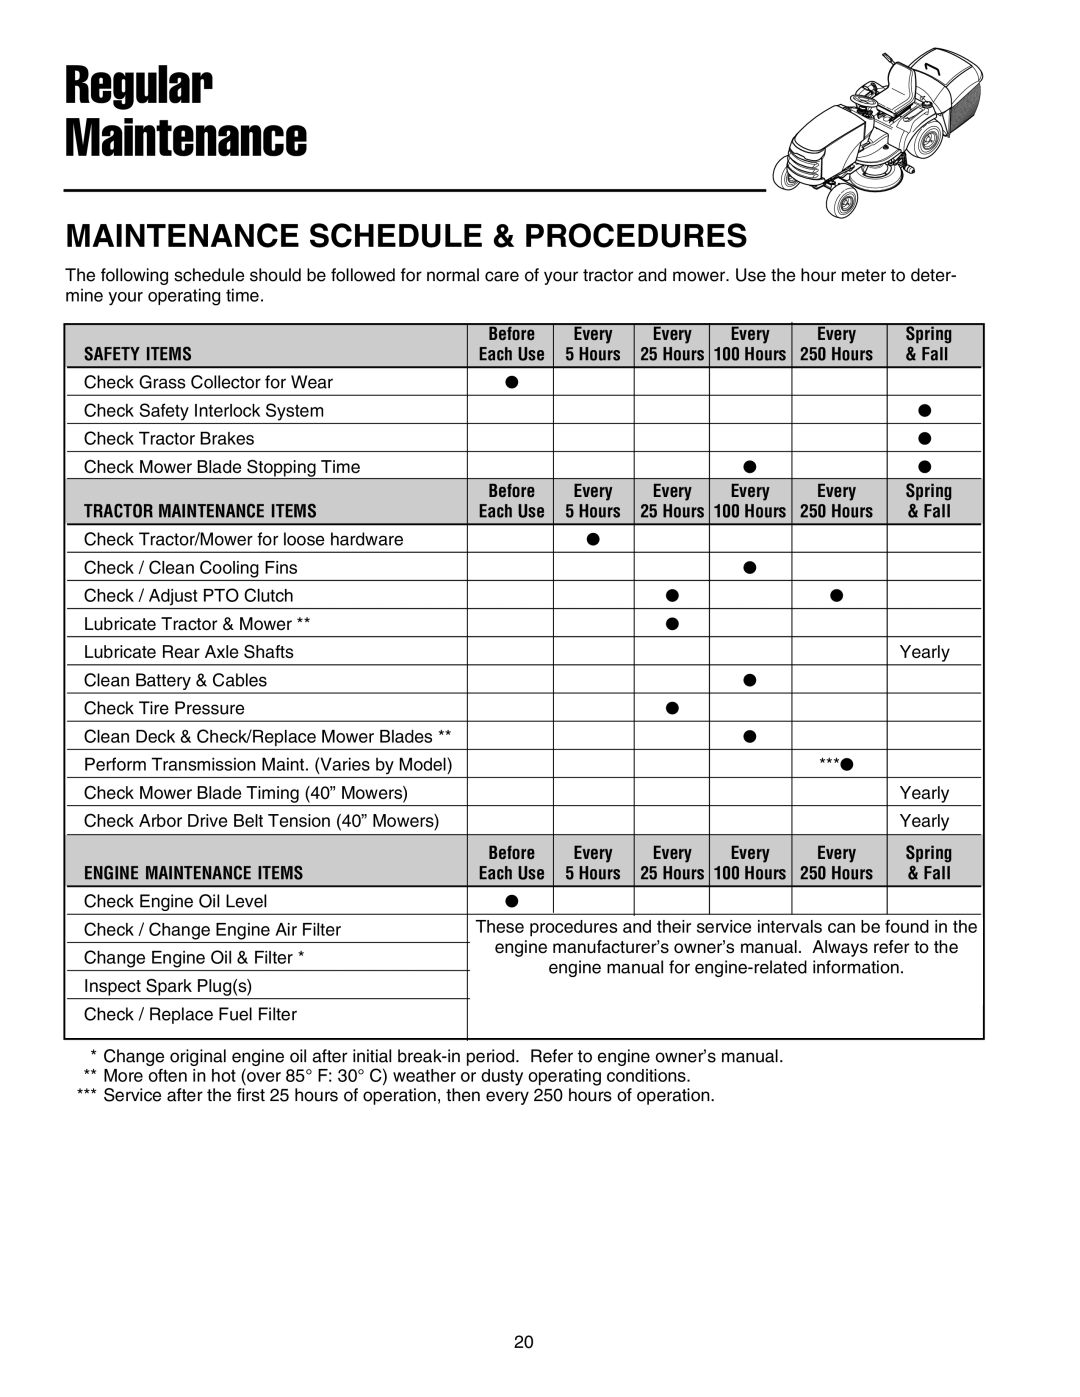 Snapper XL Series manual Regular Maintenance, Maintenance Schedule & Procedures 